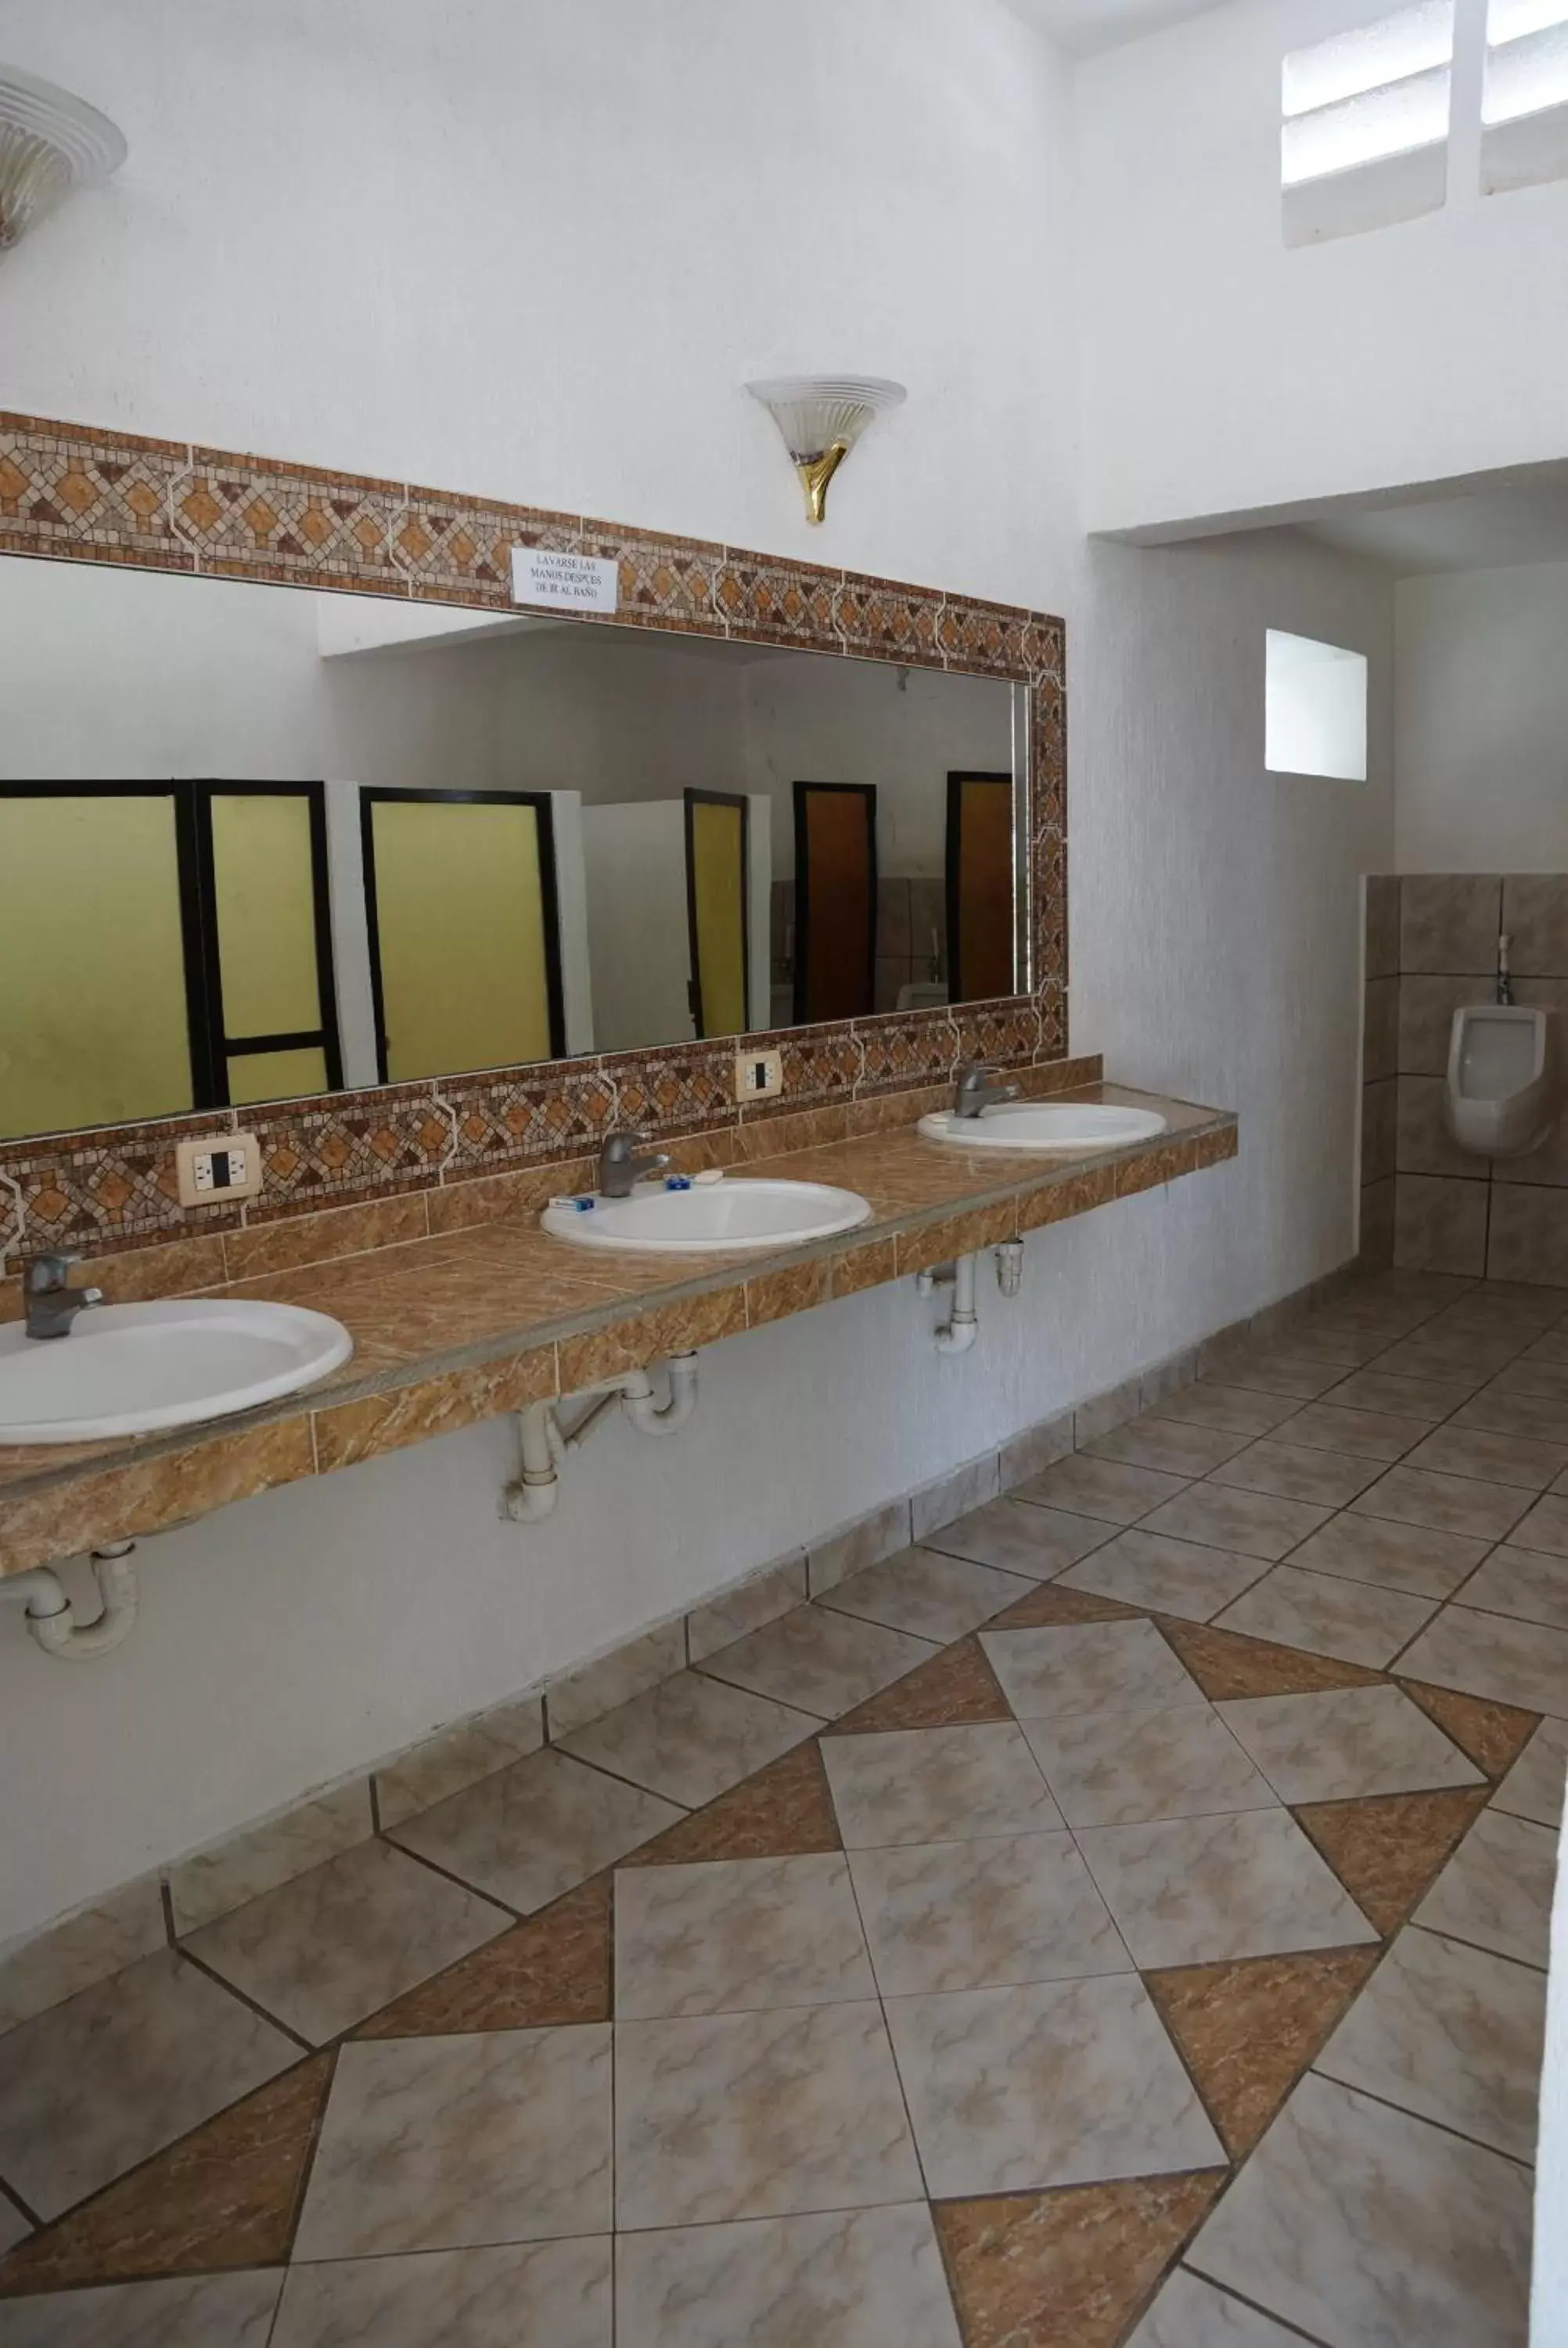 Area and facilities, Bathroom in Hotel Doralba Inn Chichen